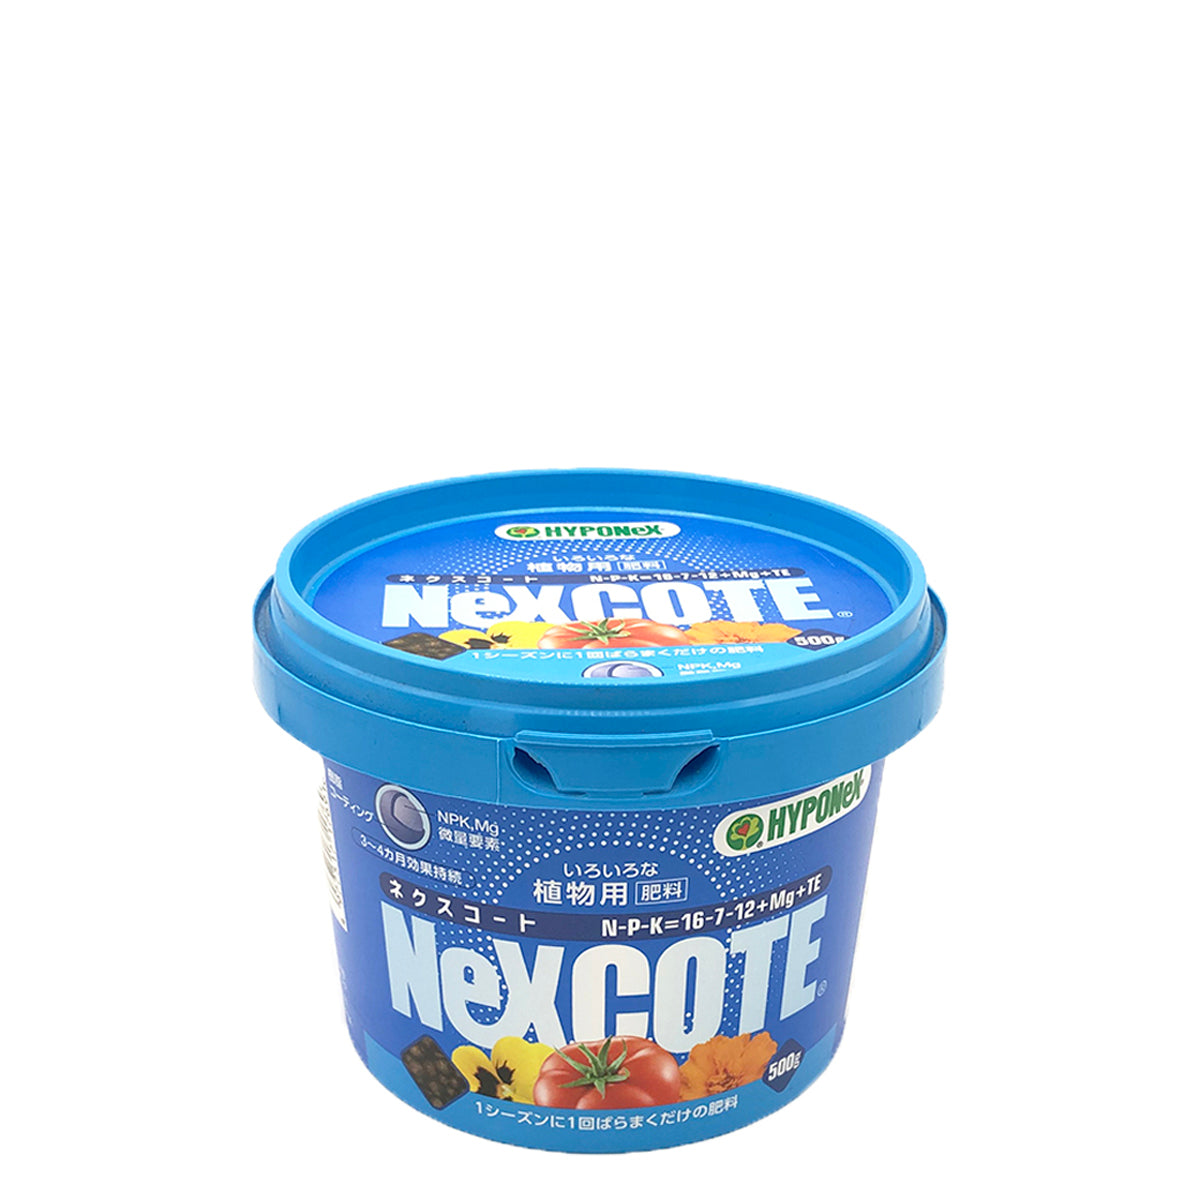 NEXCOTE 16-7-12+Mg+Te 一般植物專用粒狀肥 500g